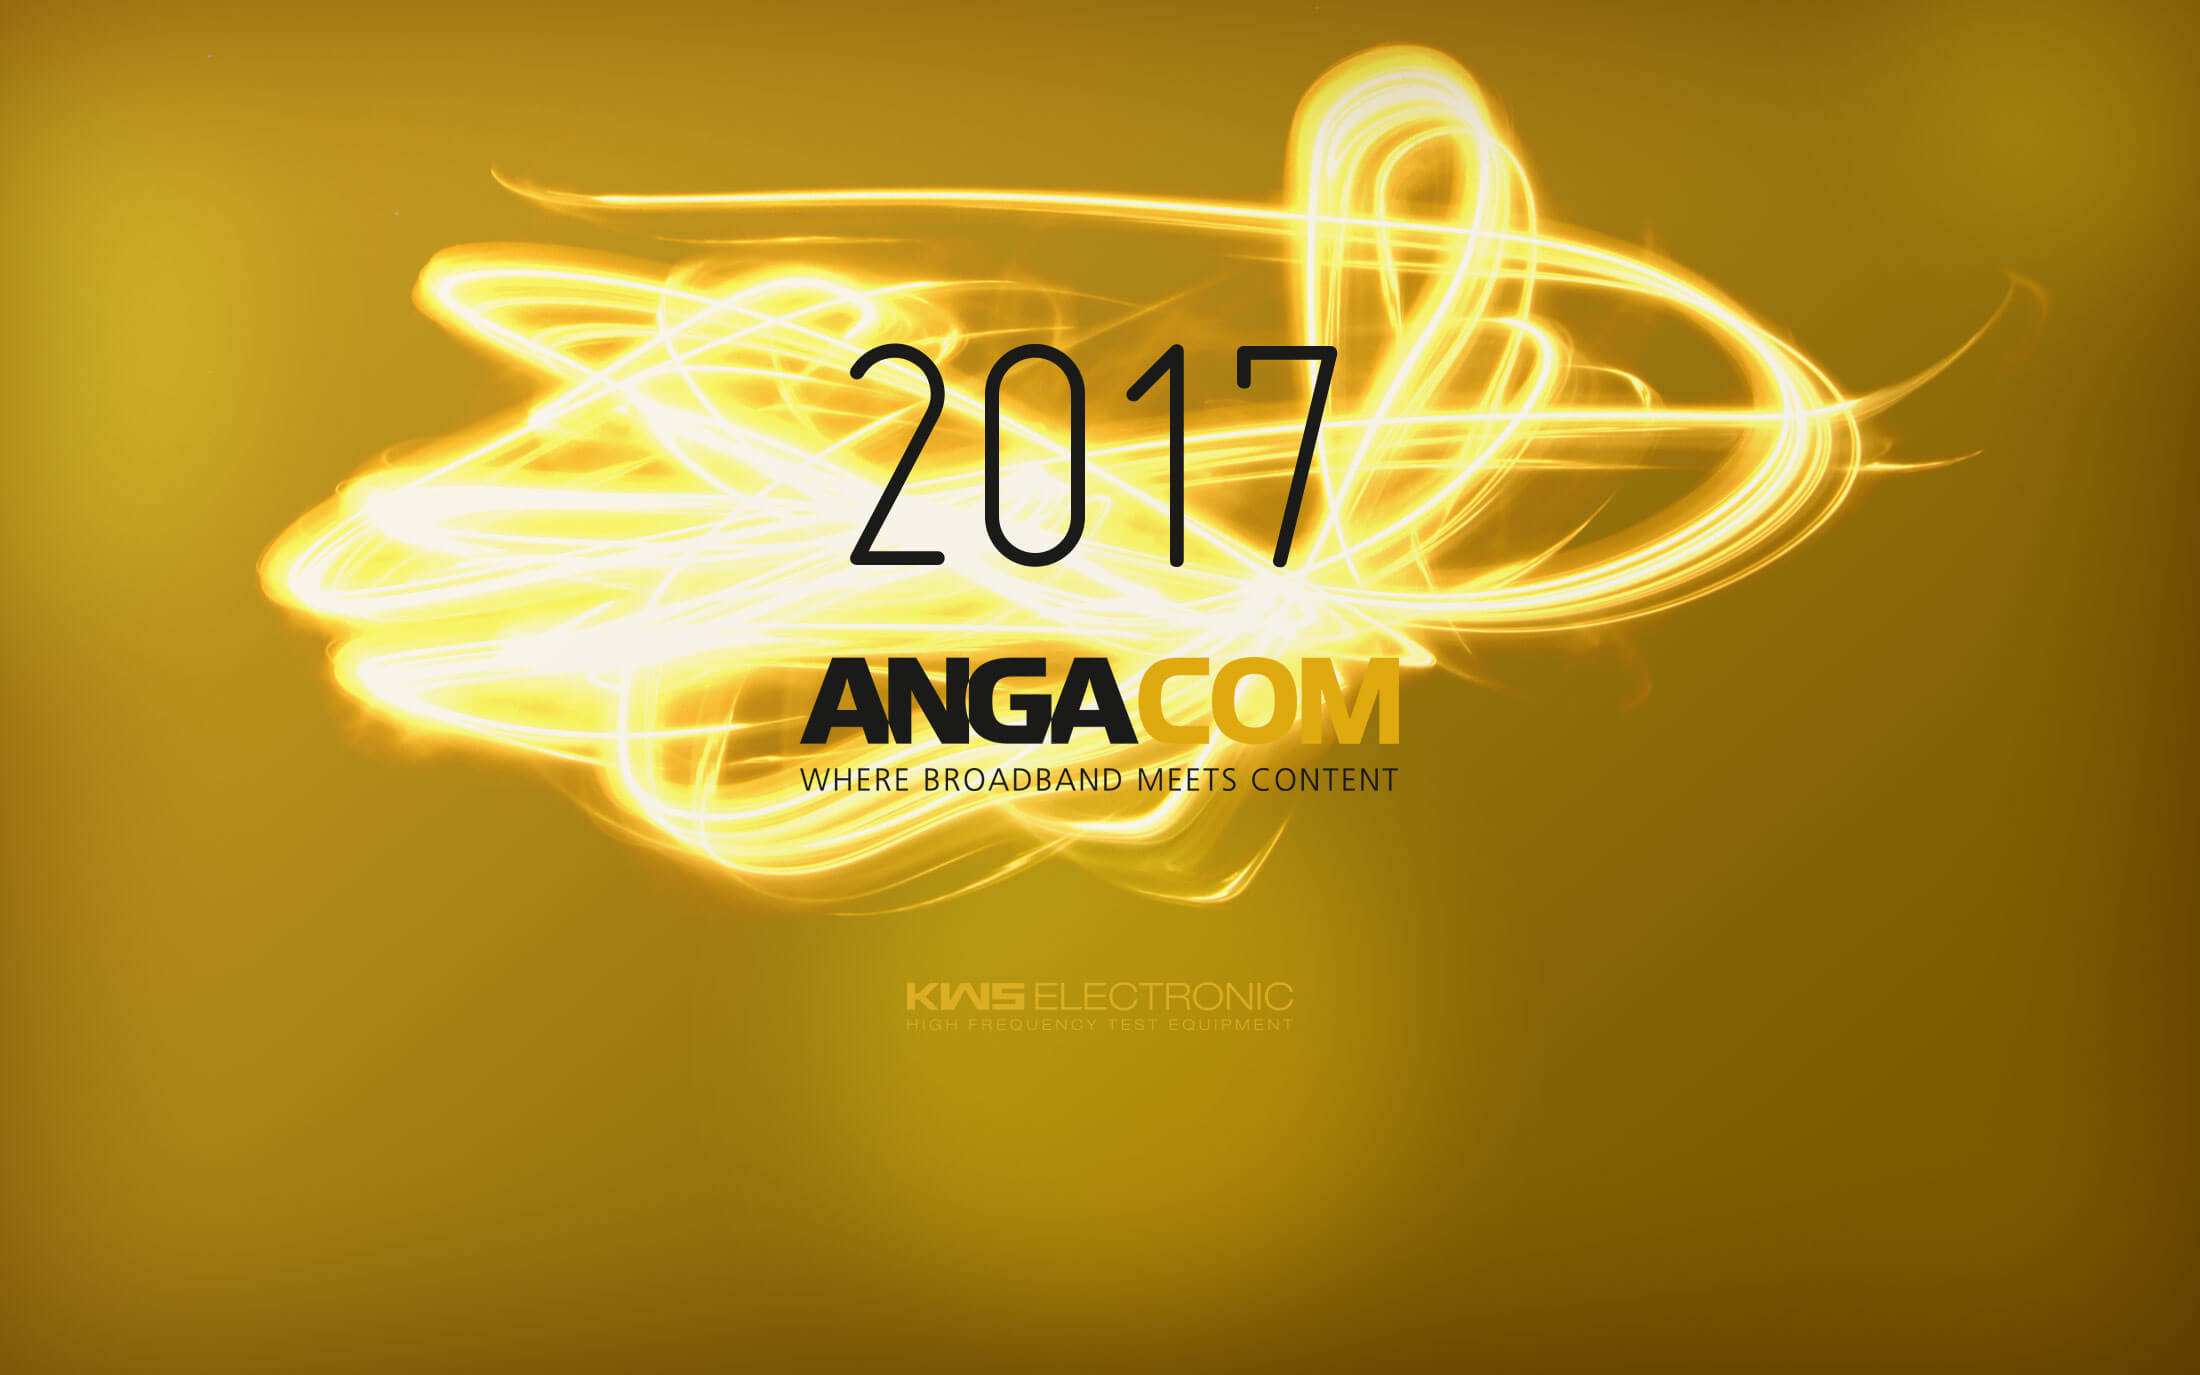 KWS-Electronic news 2017: ANGA COM in cologne